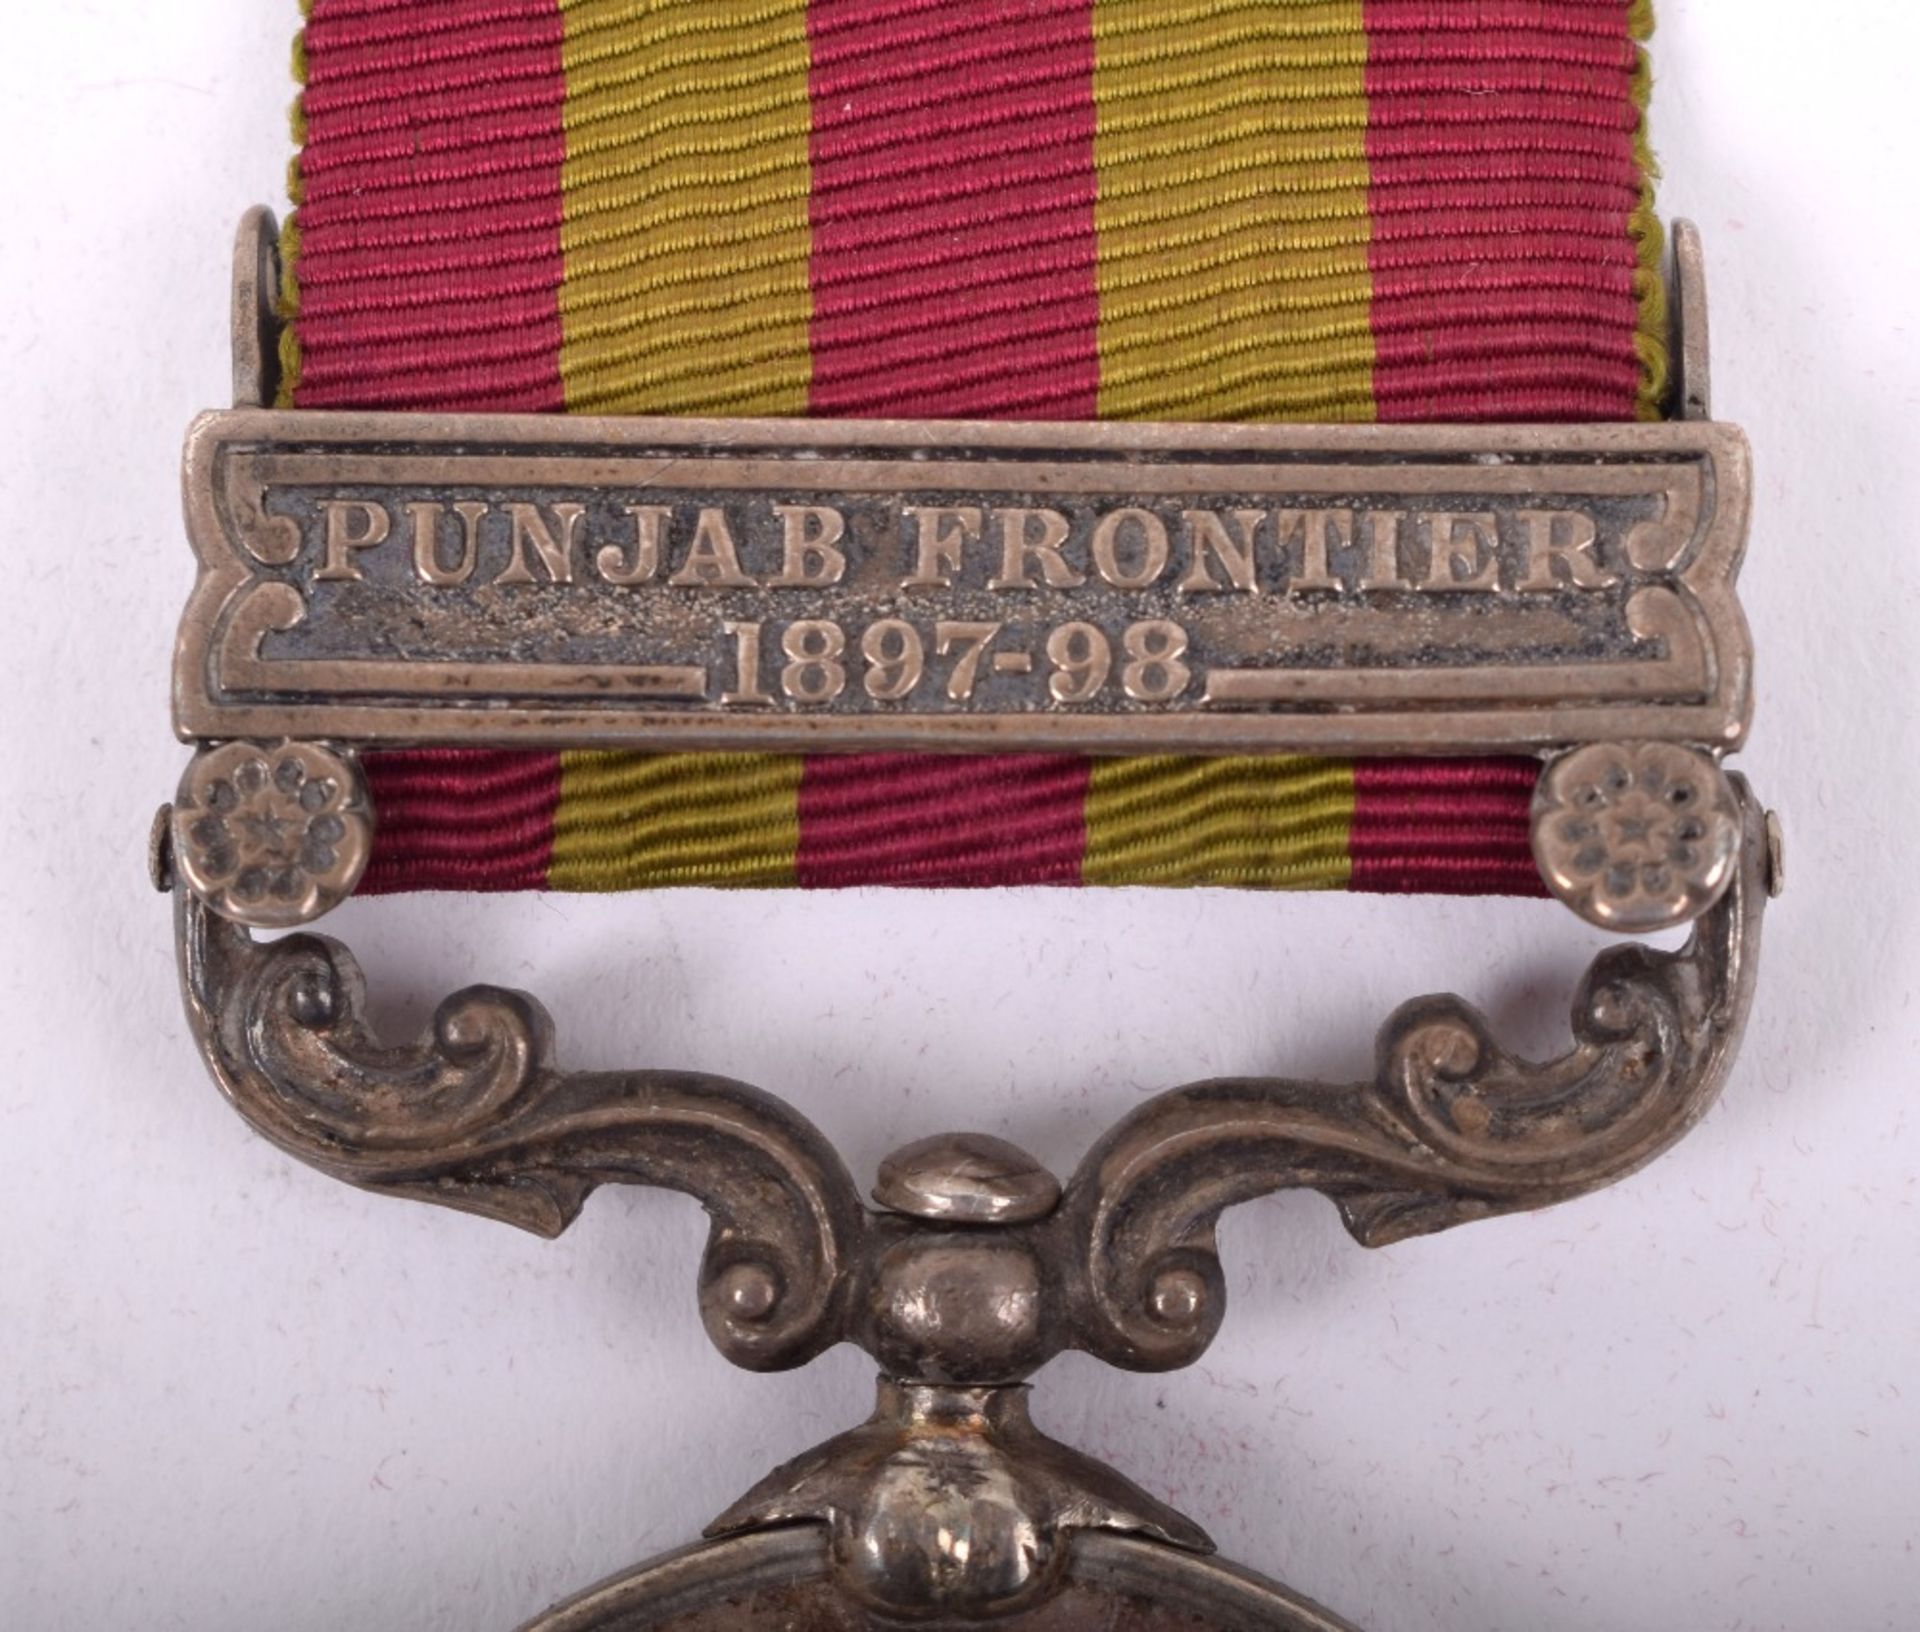 Indian General Service Medal 1895-1902 Argyll & Sutherland Highlanders - Image 2 of 6